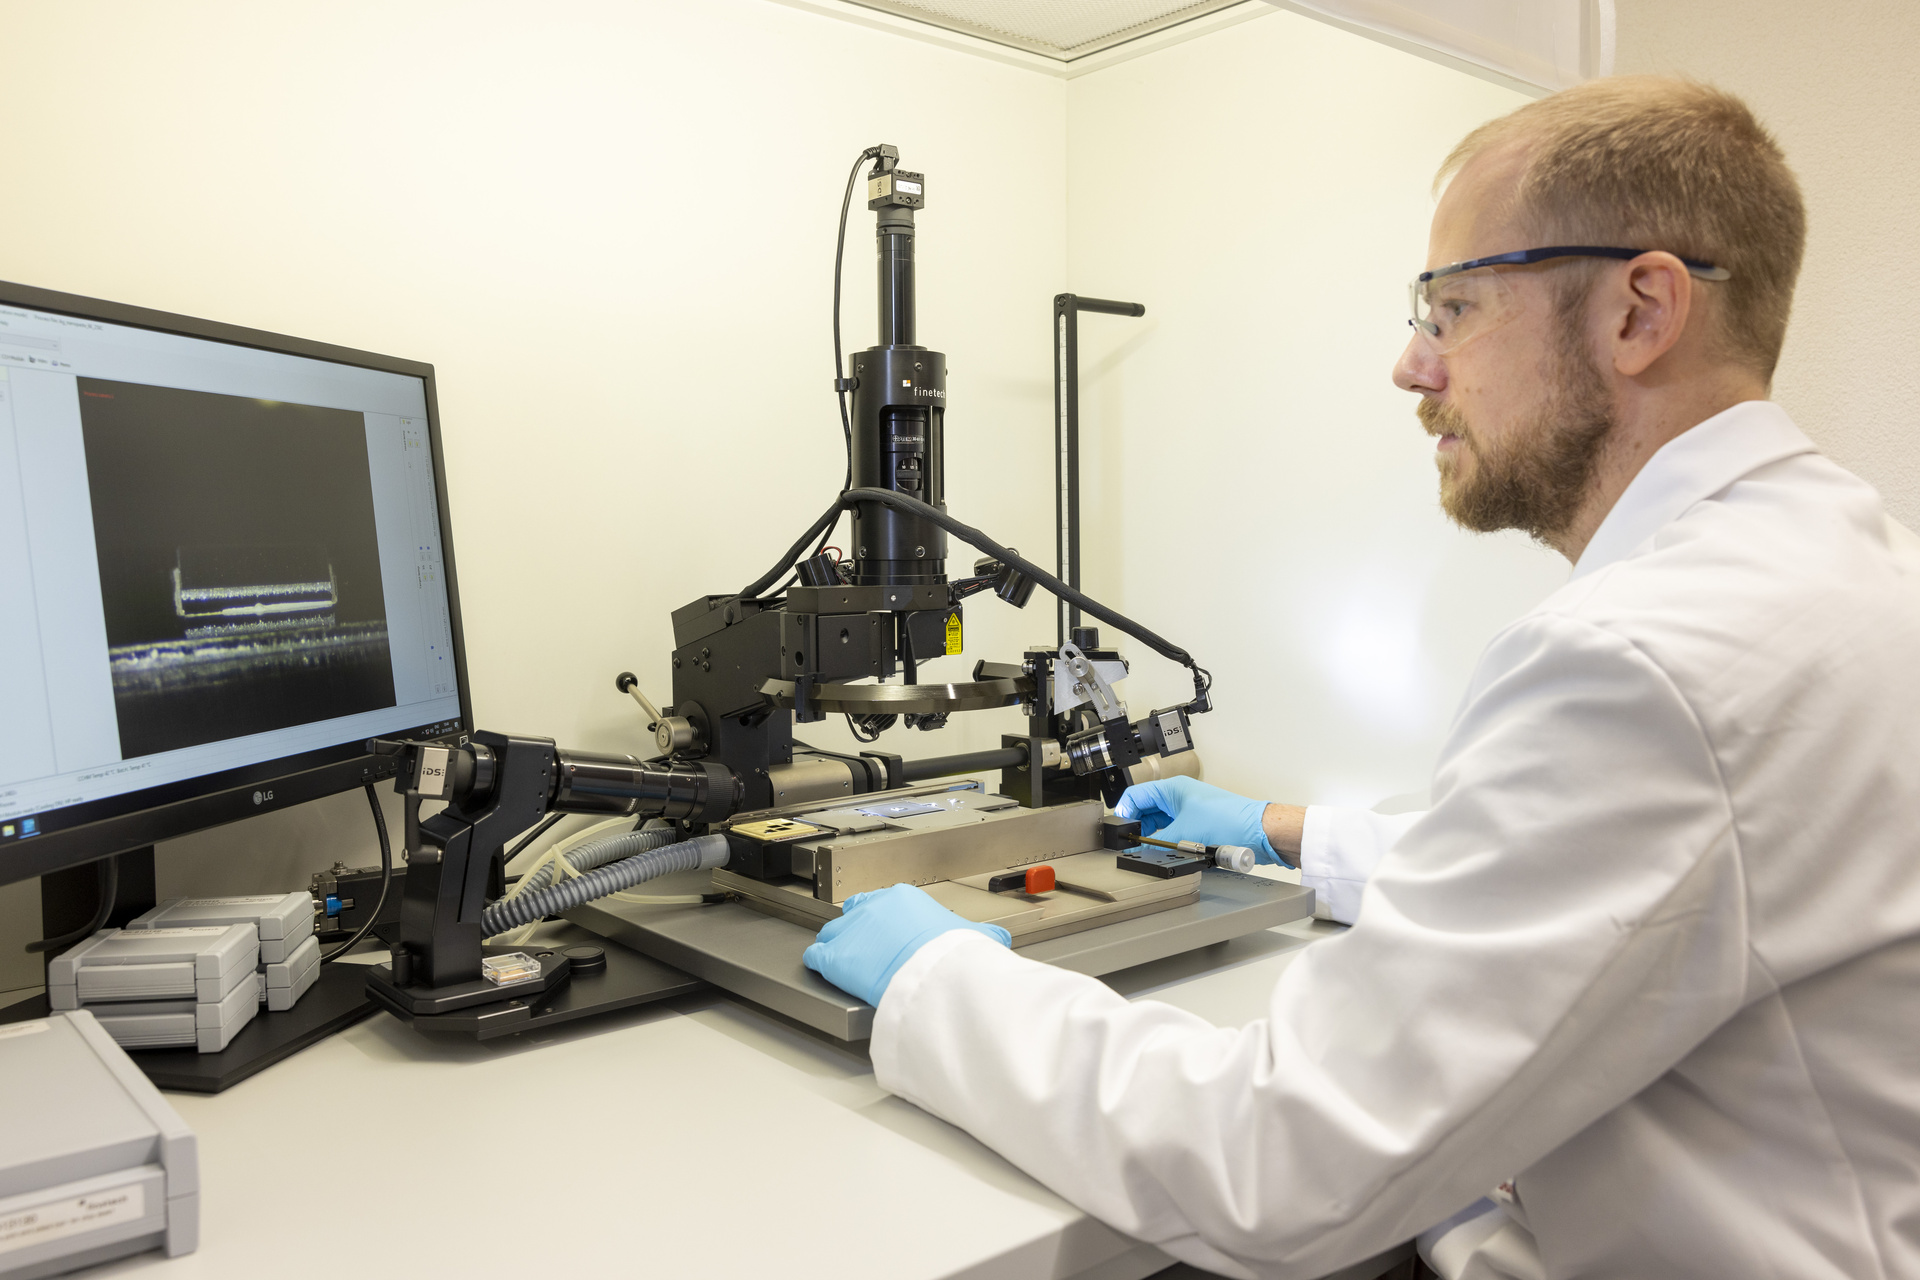 Nanogrimcat: Bastian Rheingans inspekton një çip të vogël që është lidhur në një nënshtresë me saktësi mikrometrike duke përdorur një lidhës me çip rrotullues, duke demonstruar cilësinë e kërkimit të EMPA